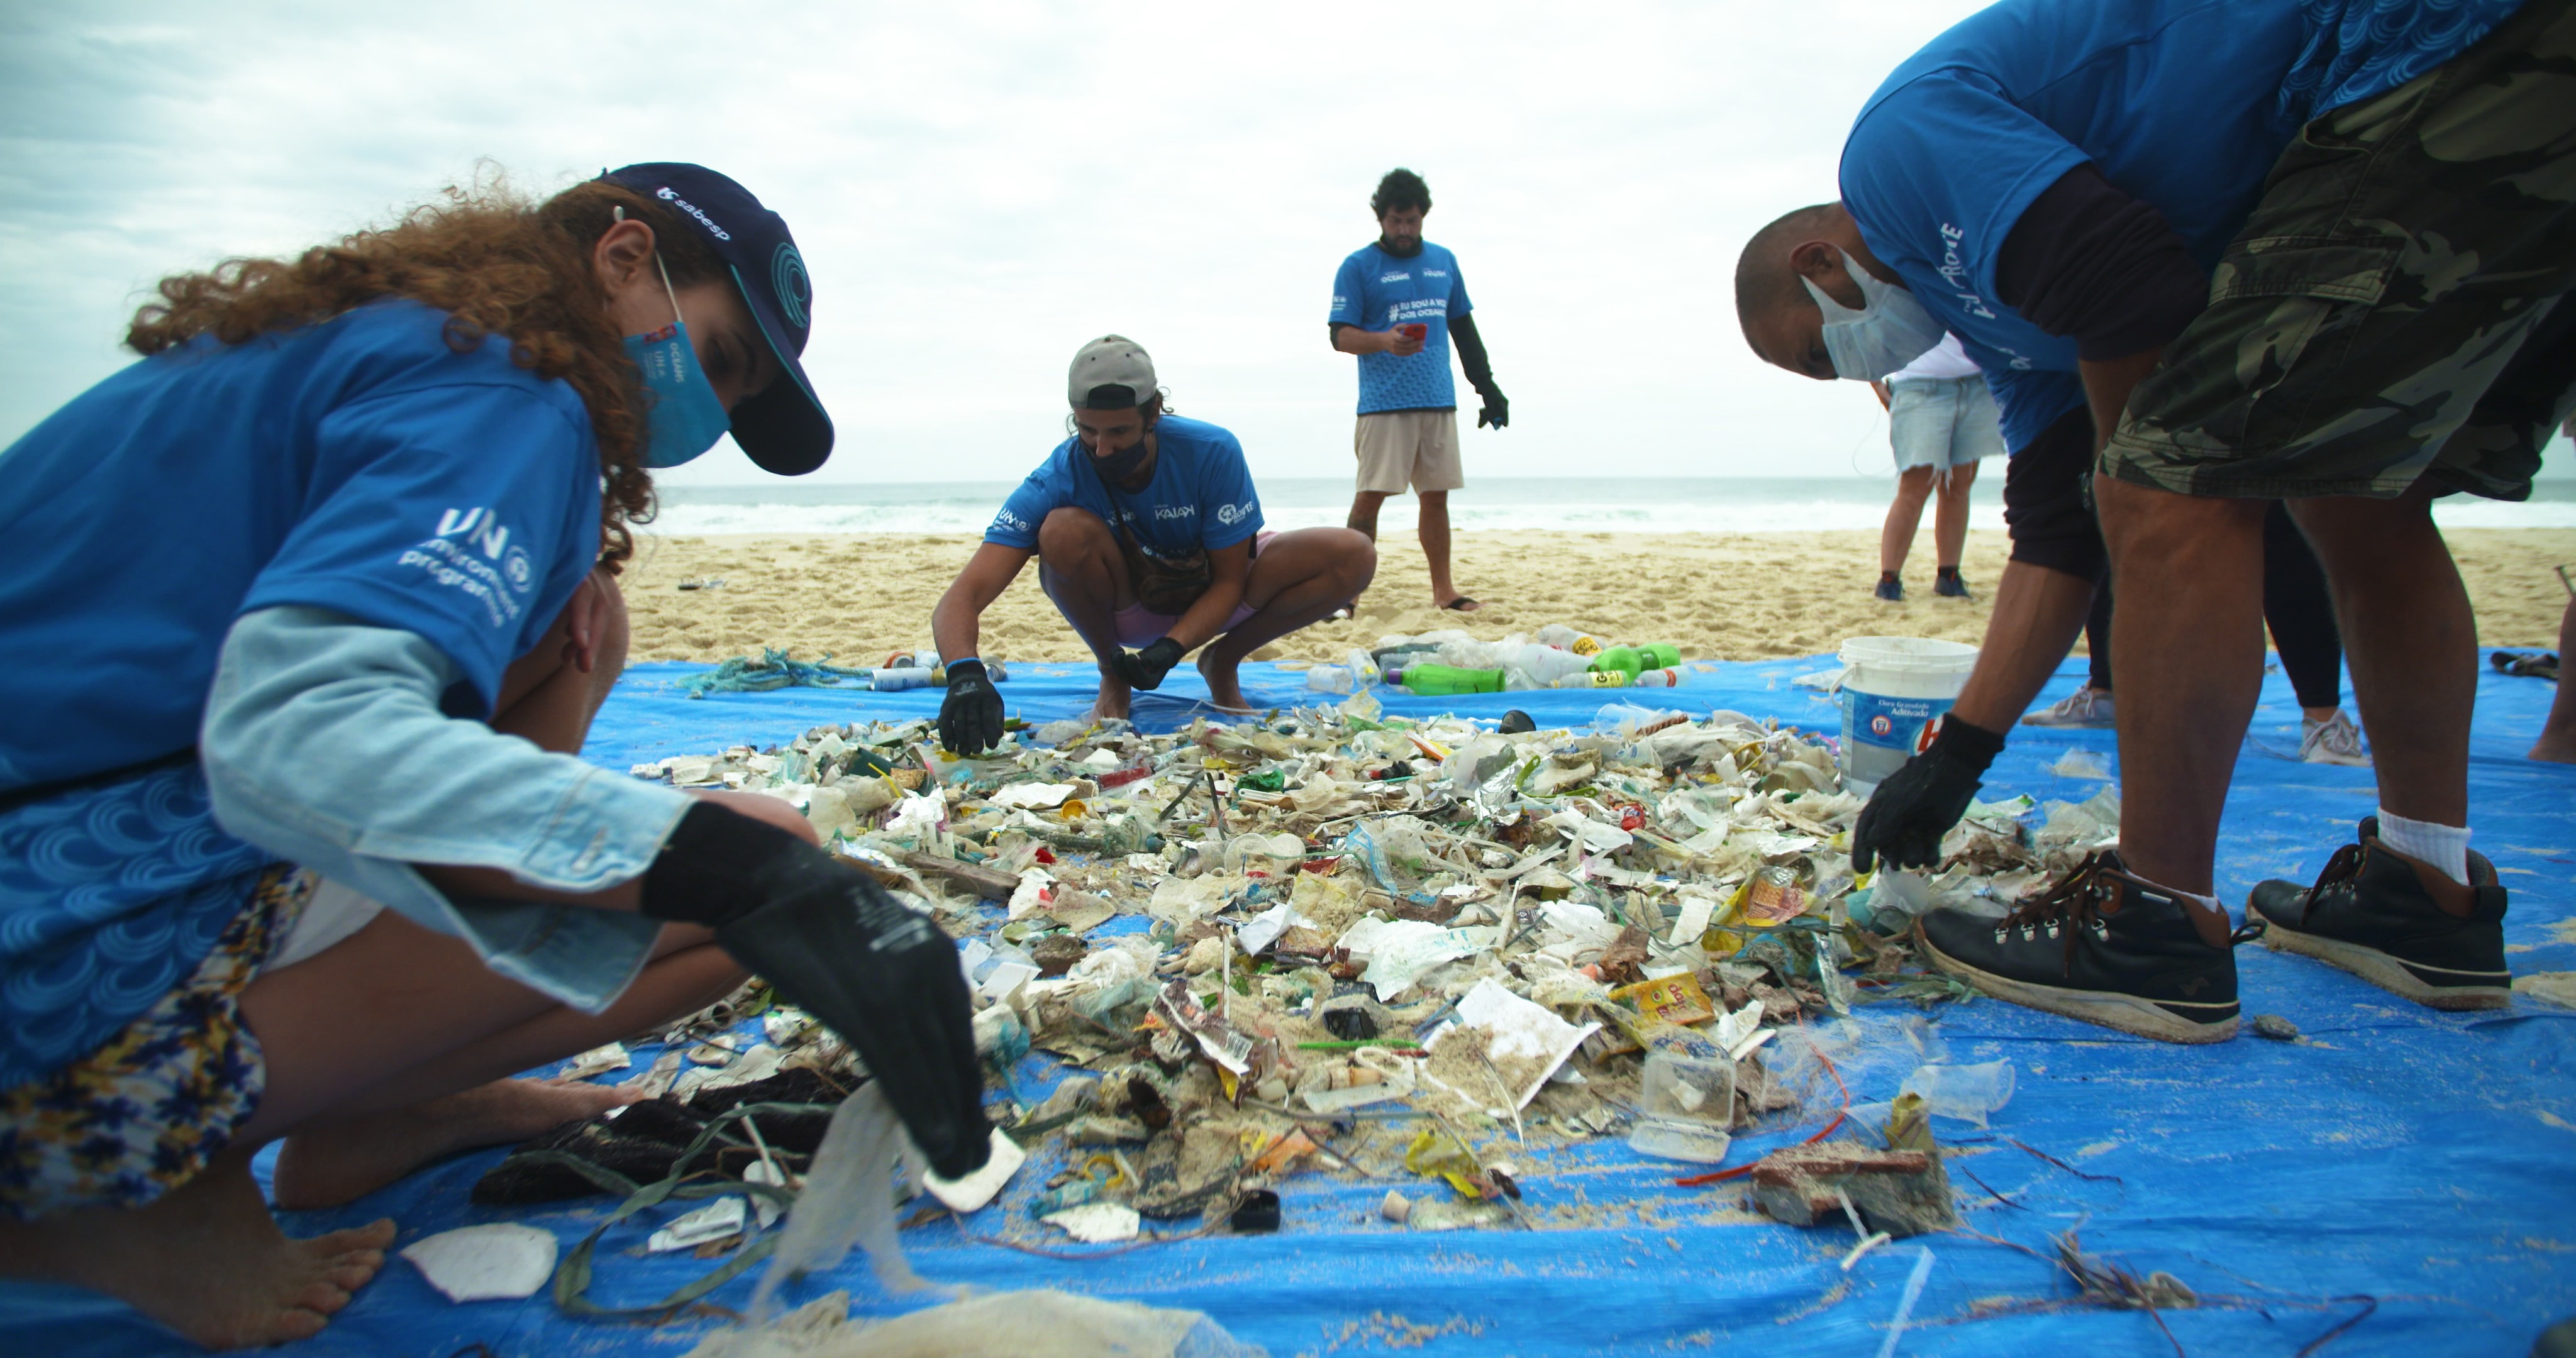 Expedição Voz dos Oceanos traz à tona o debate sobre descarte de resíduos e consumo consciente em prol da proteção e defesa da vida marinha  (Foto: Divulgação)